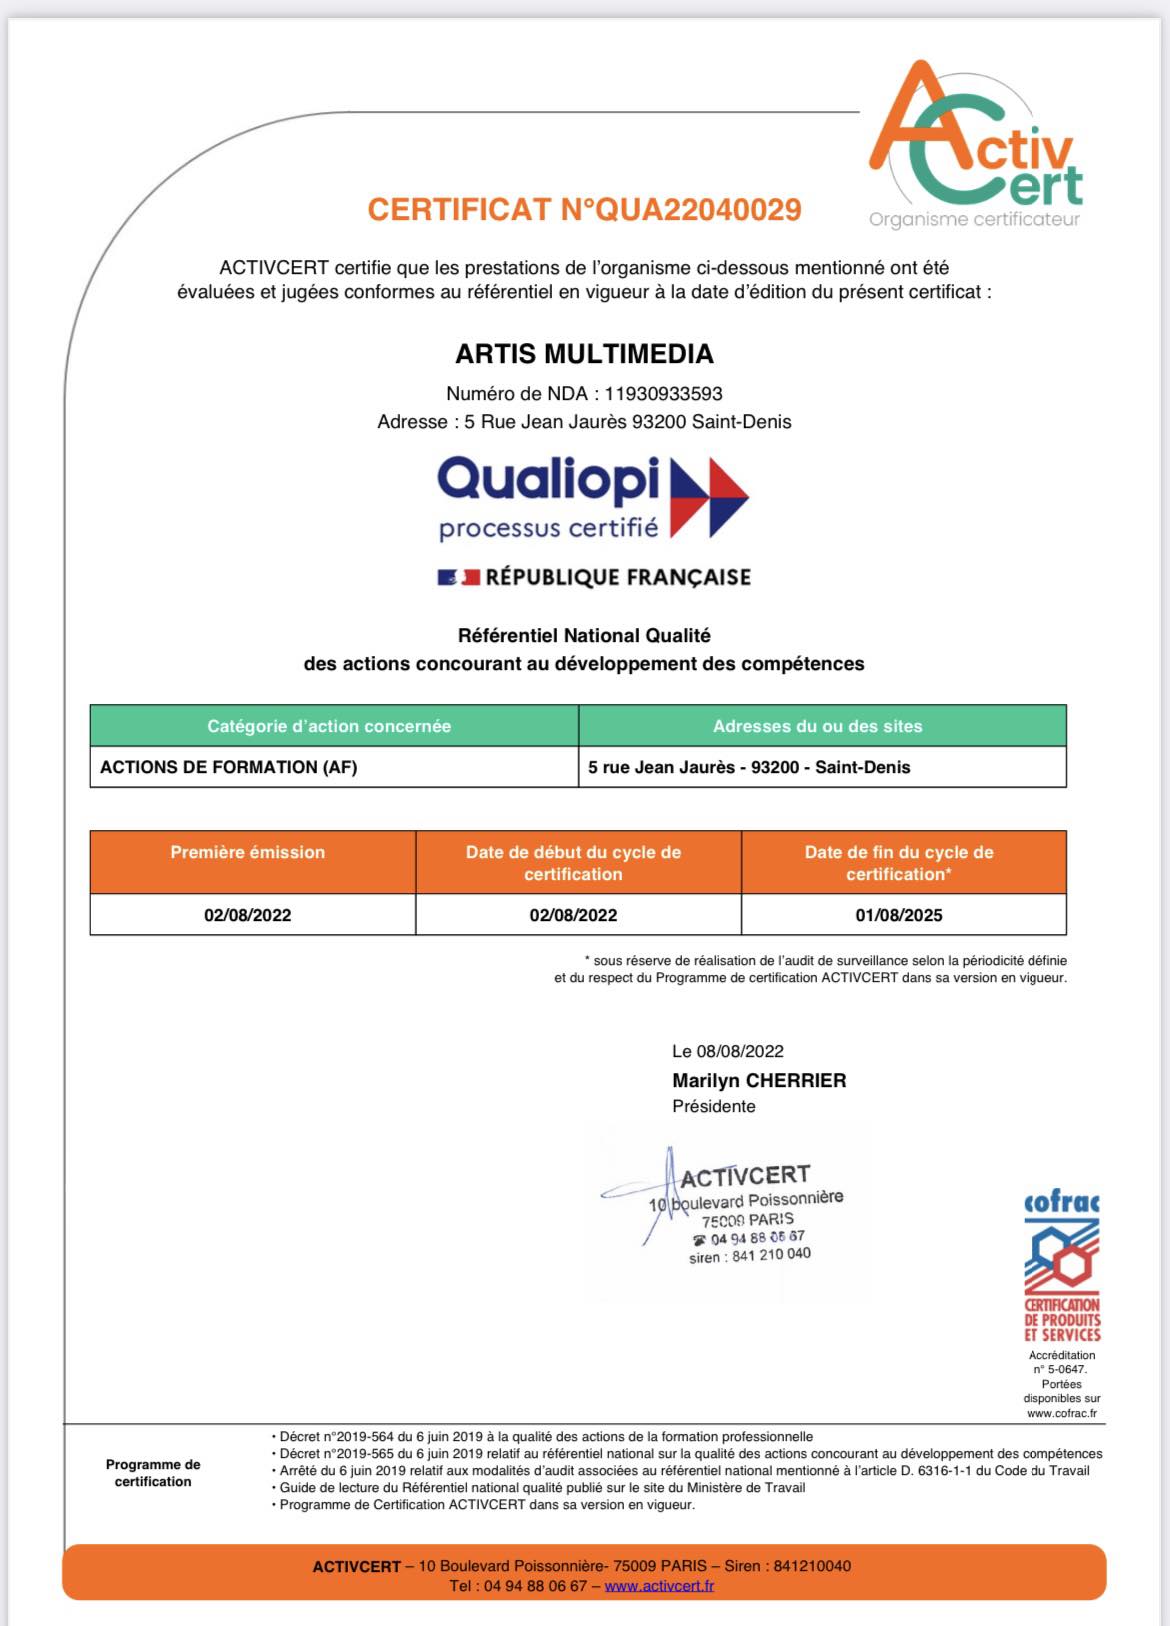 certification Qualiopi accordée à Artis Multimedia par l'organisme ActivCert